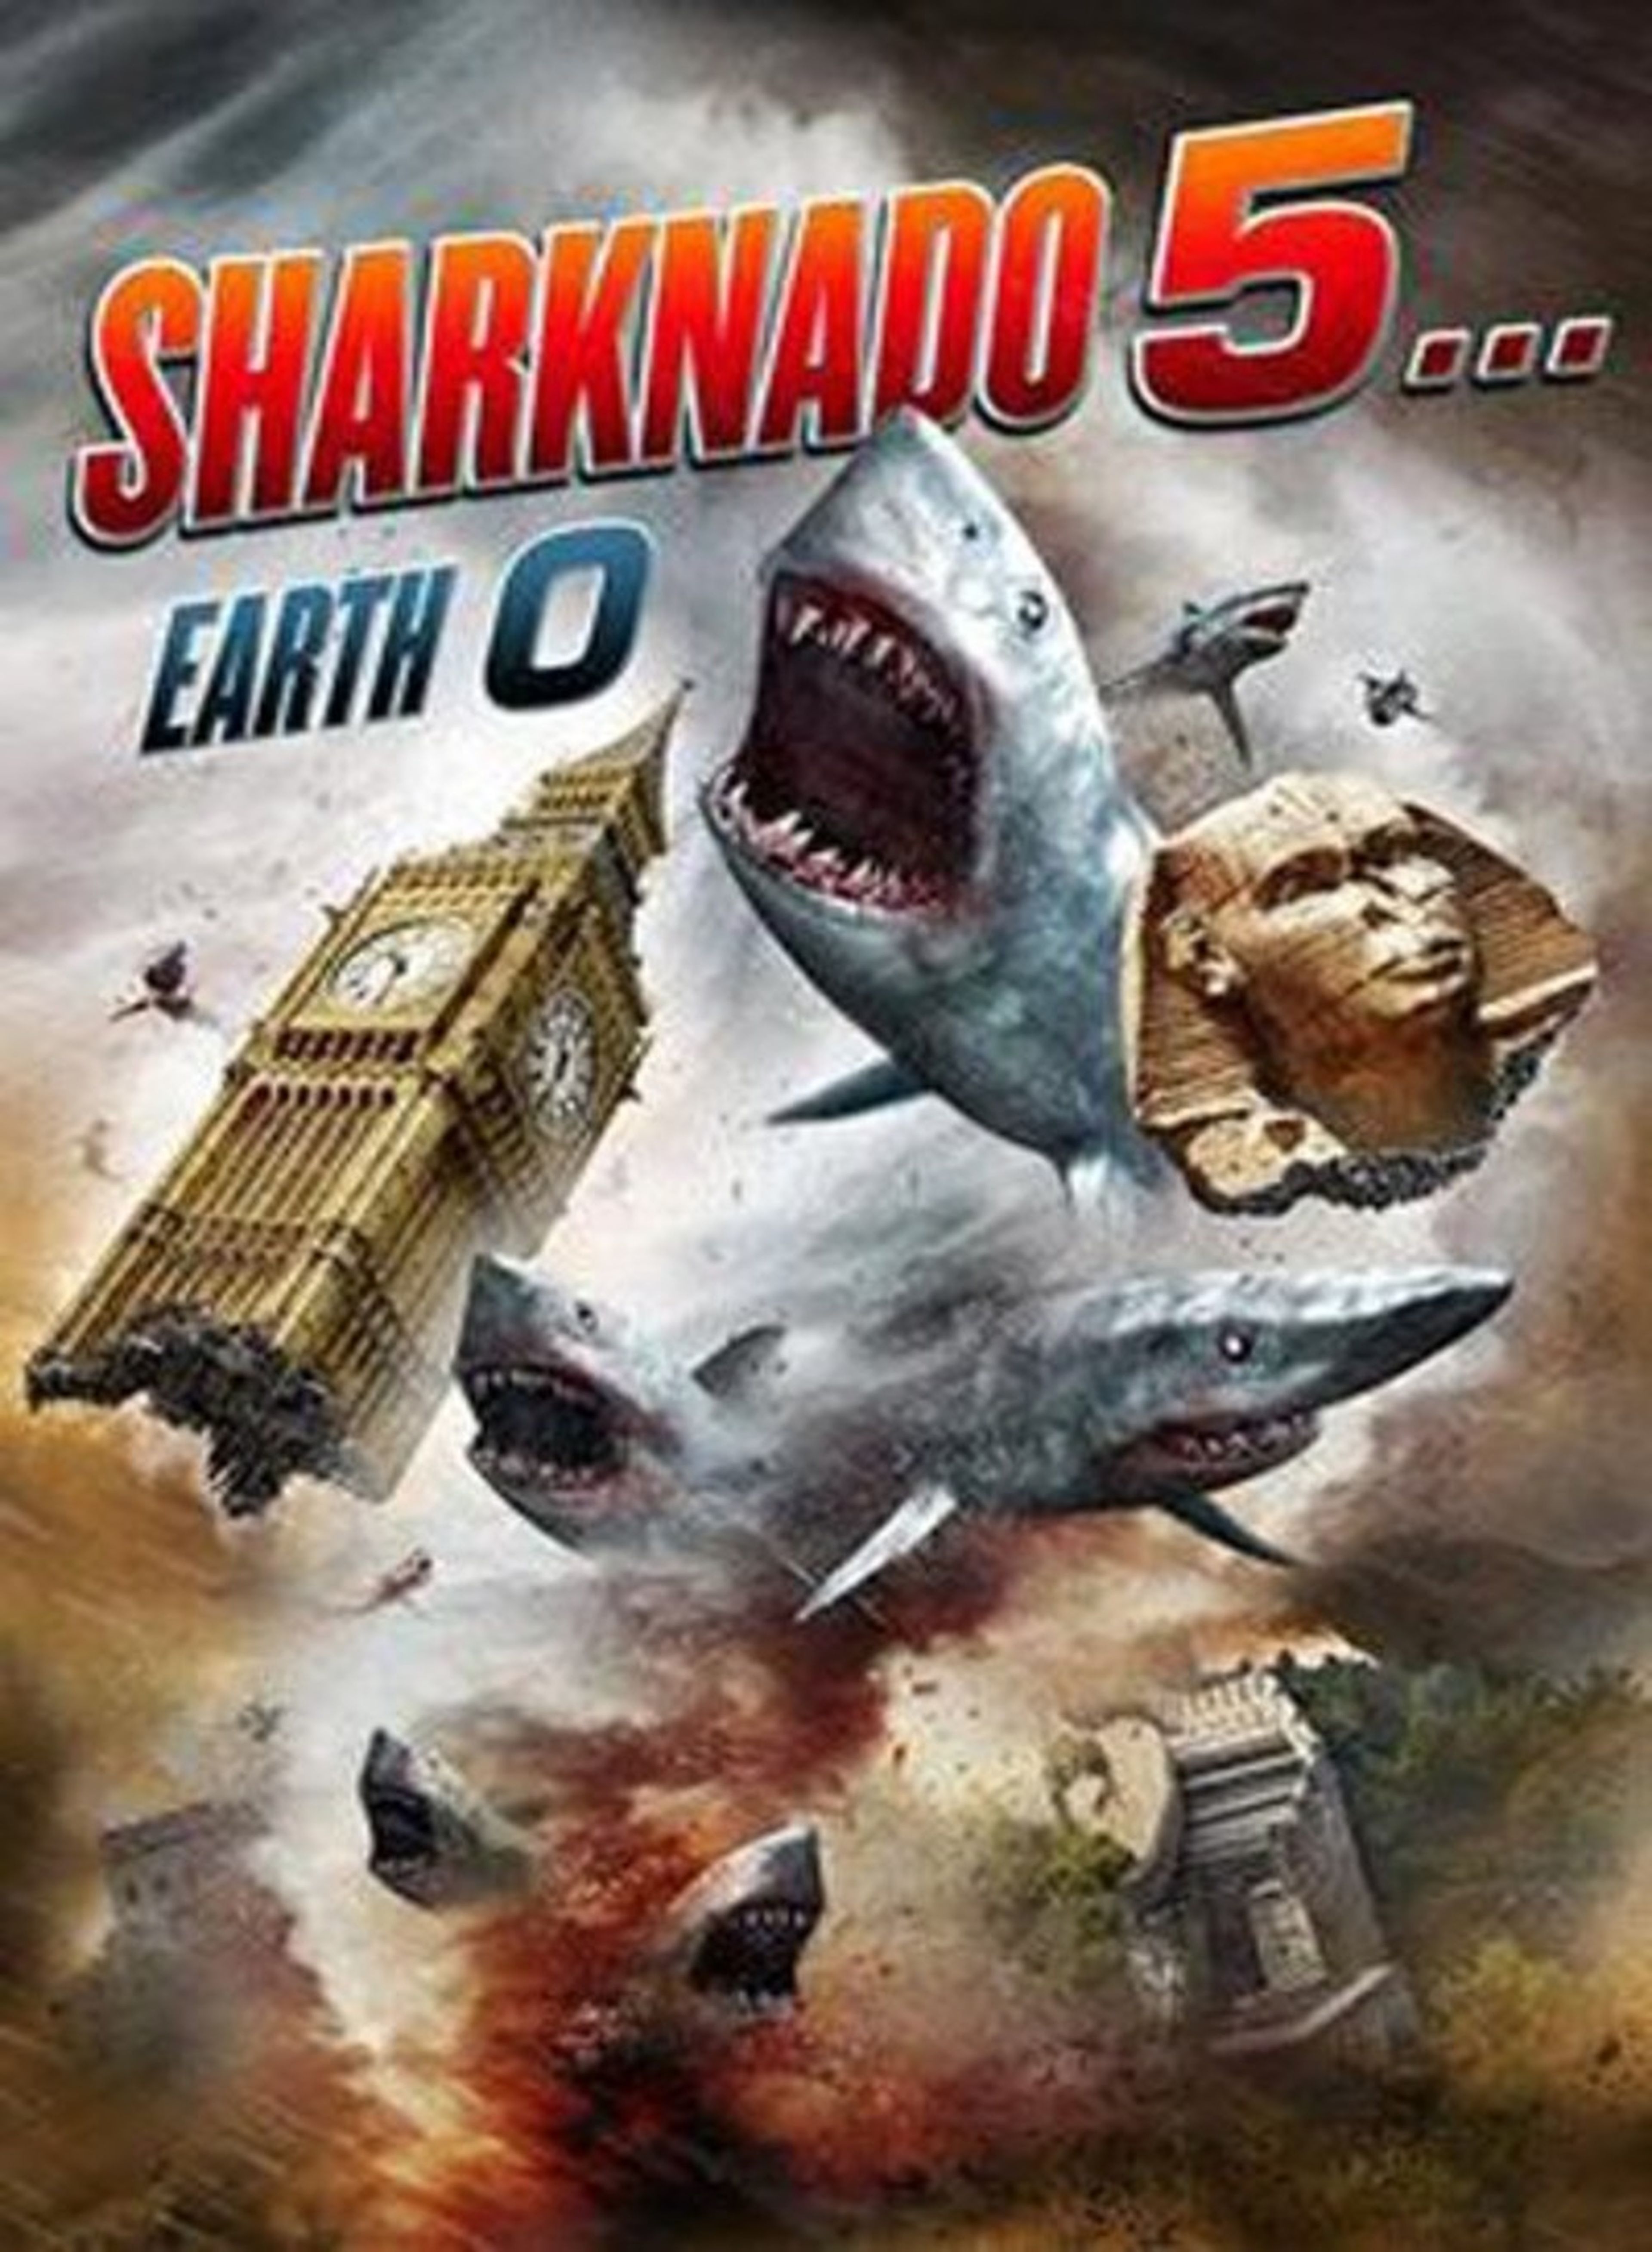 Sharknado 5… Earth 0